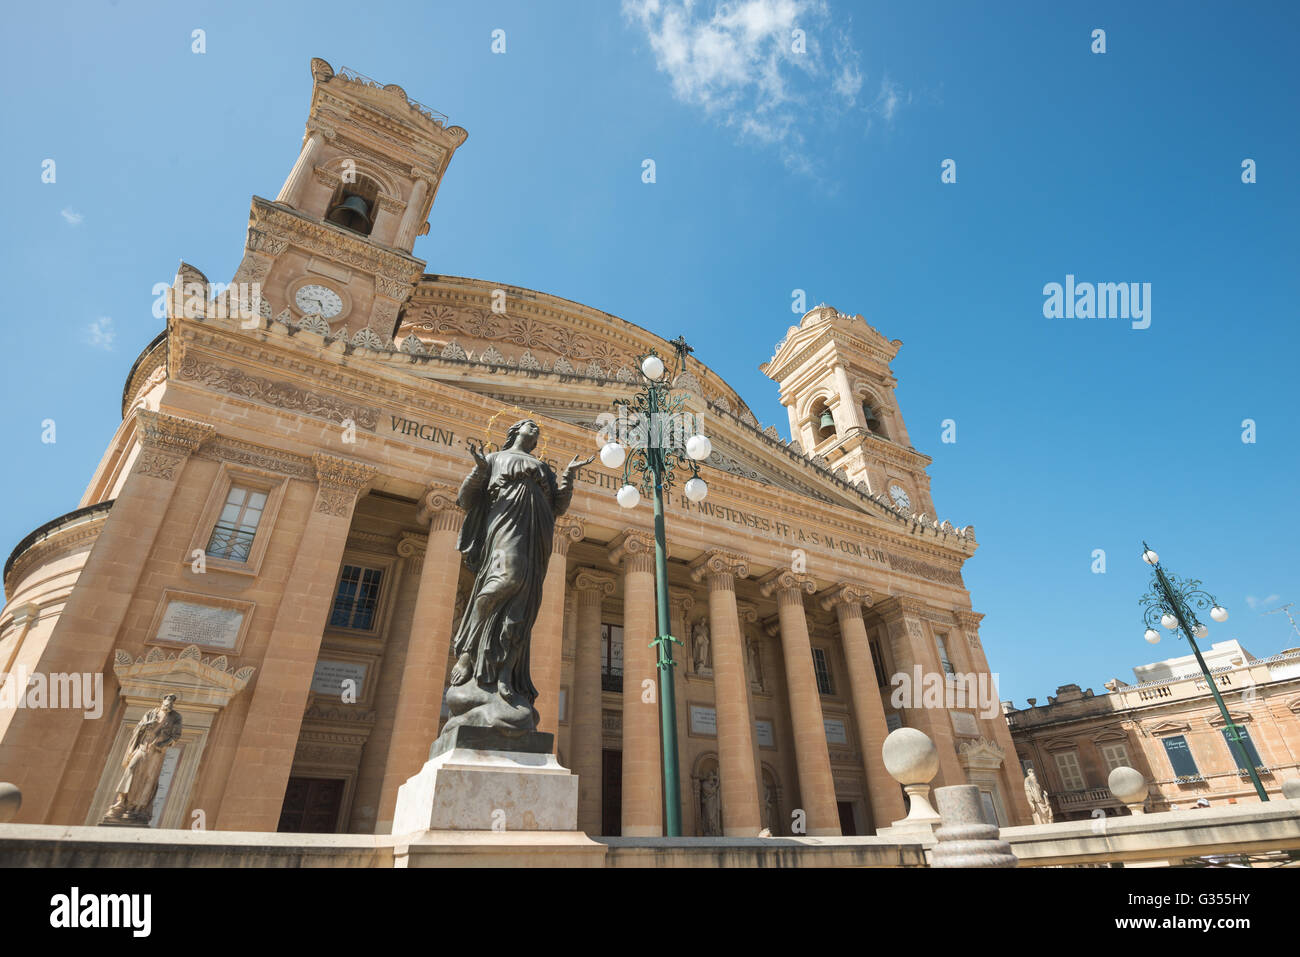 The Mosta Dome in Malta Stock Photo